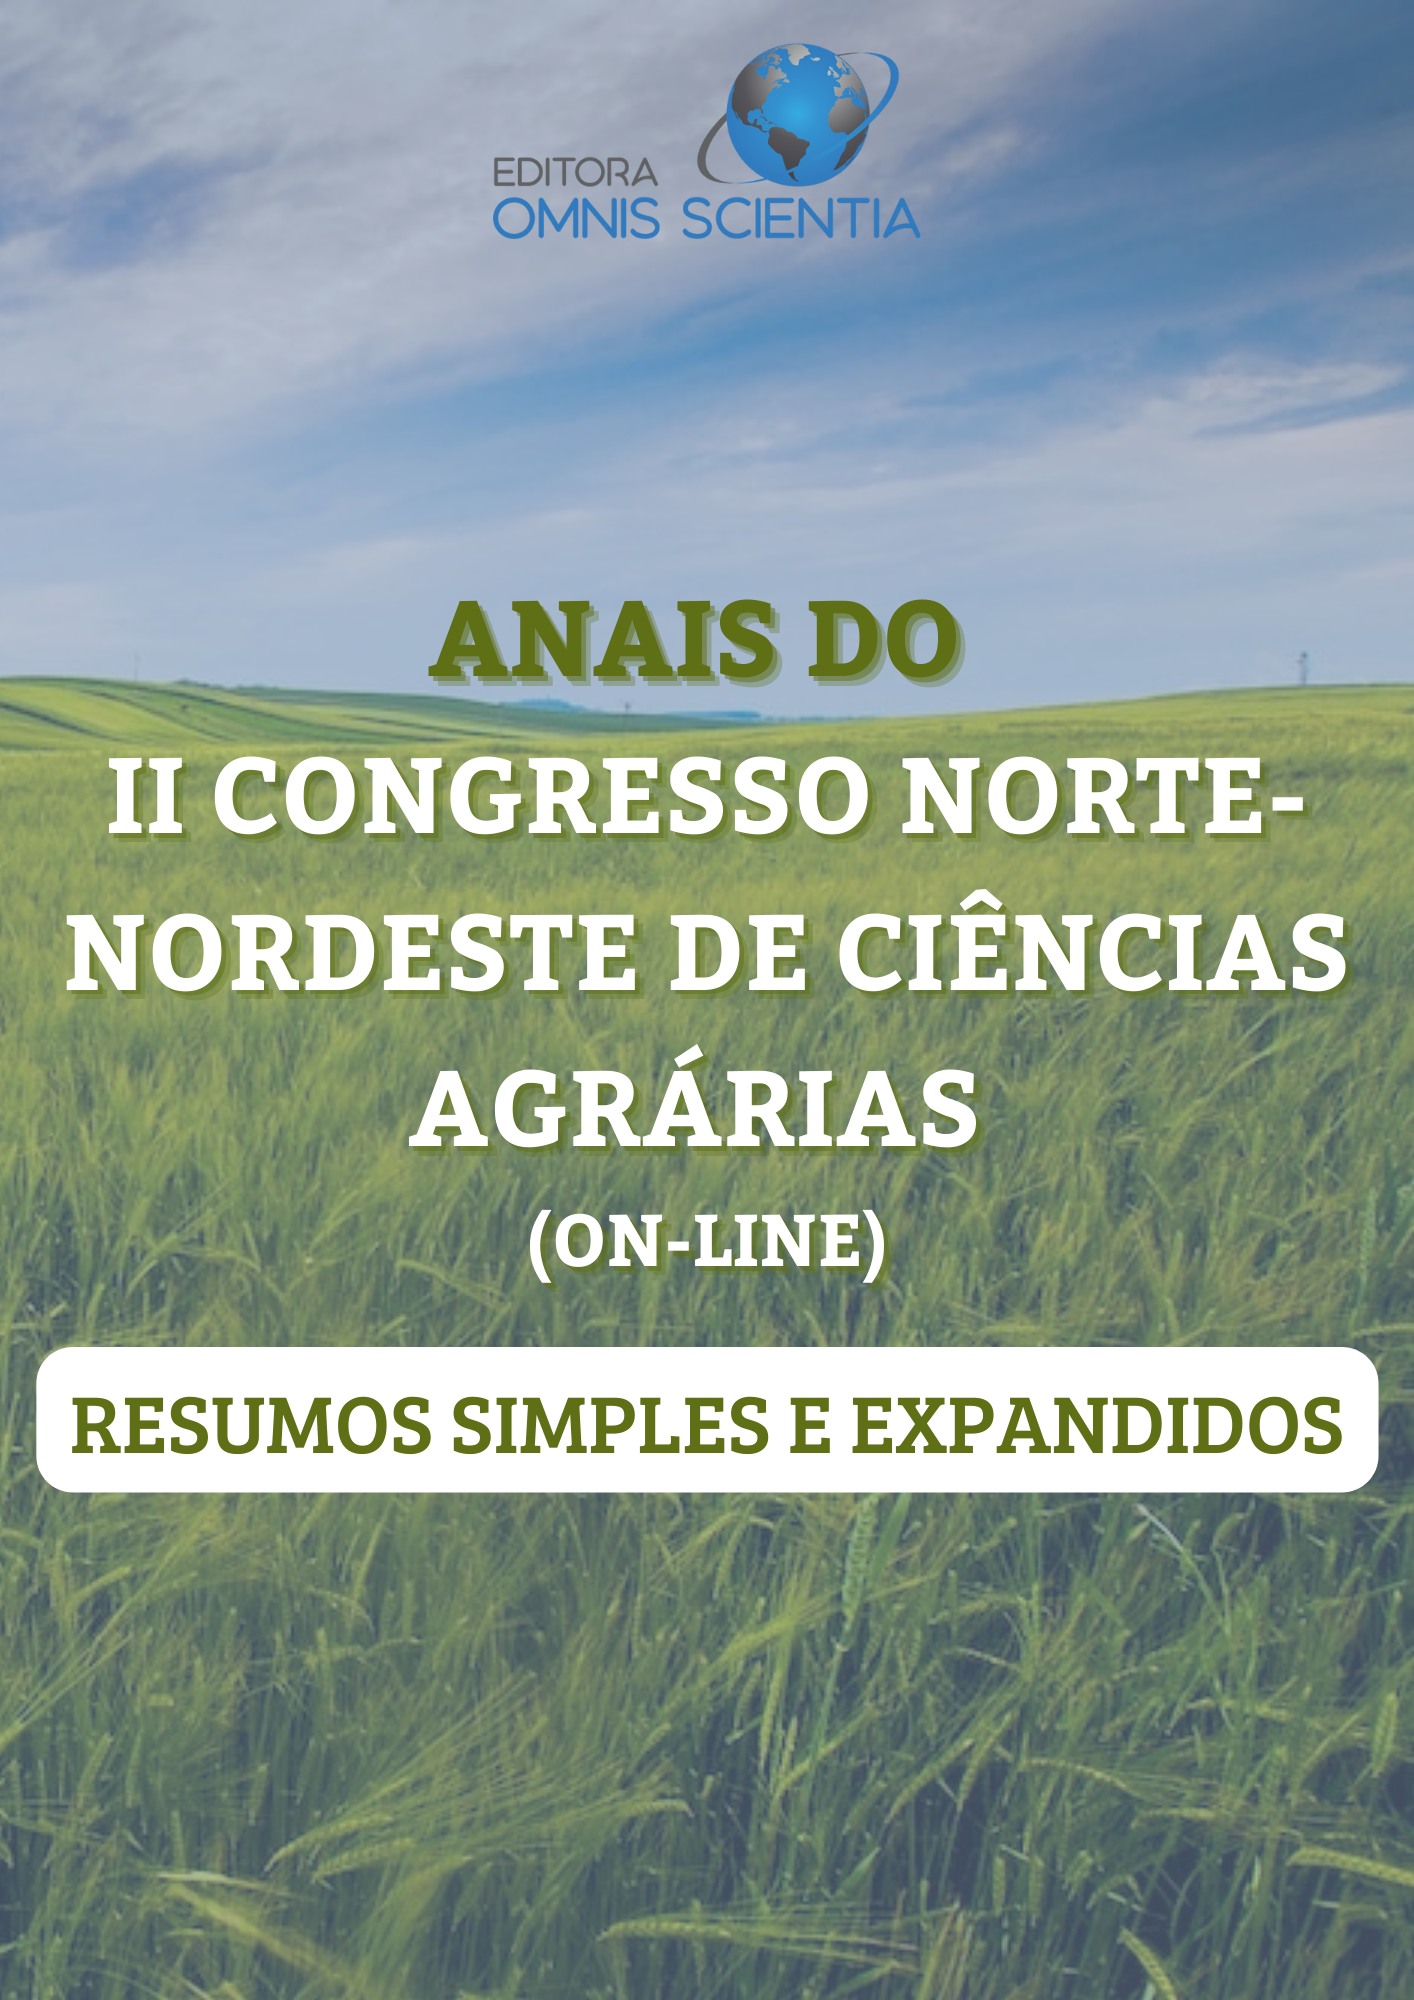 ANAIS DO II CONGRESSO NORTE-NORDESTE DE CIÊNCIAS AGRÁRIAS (ON-LINE) – RESUMO SIMPLES E EXPANDIDO